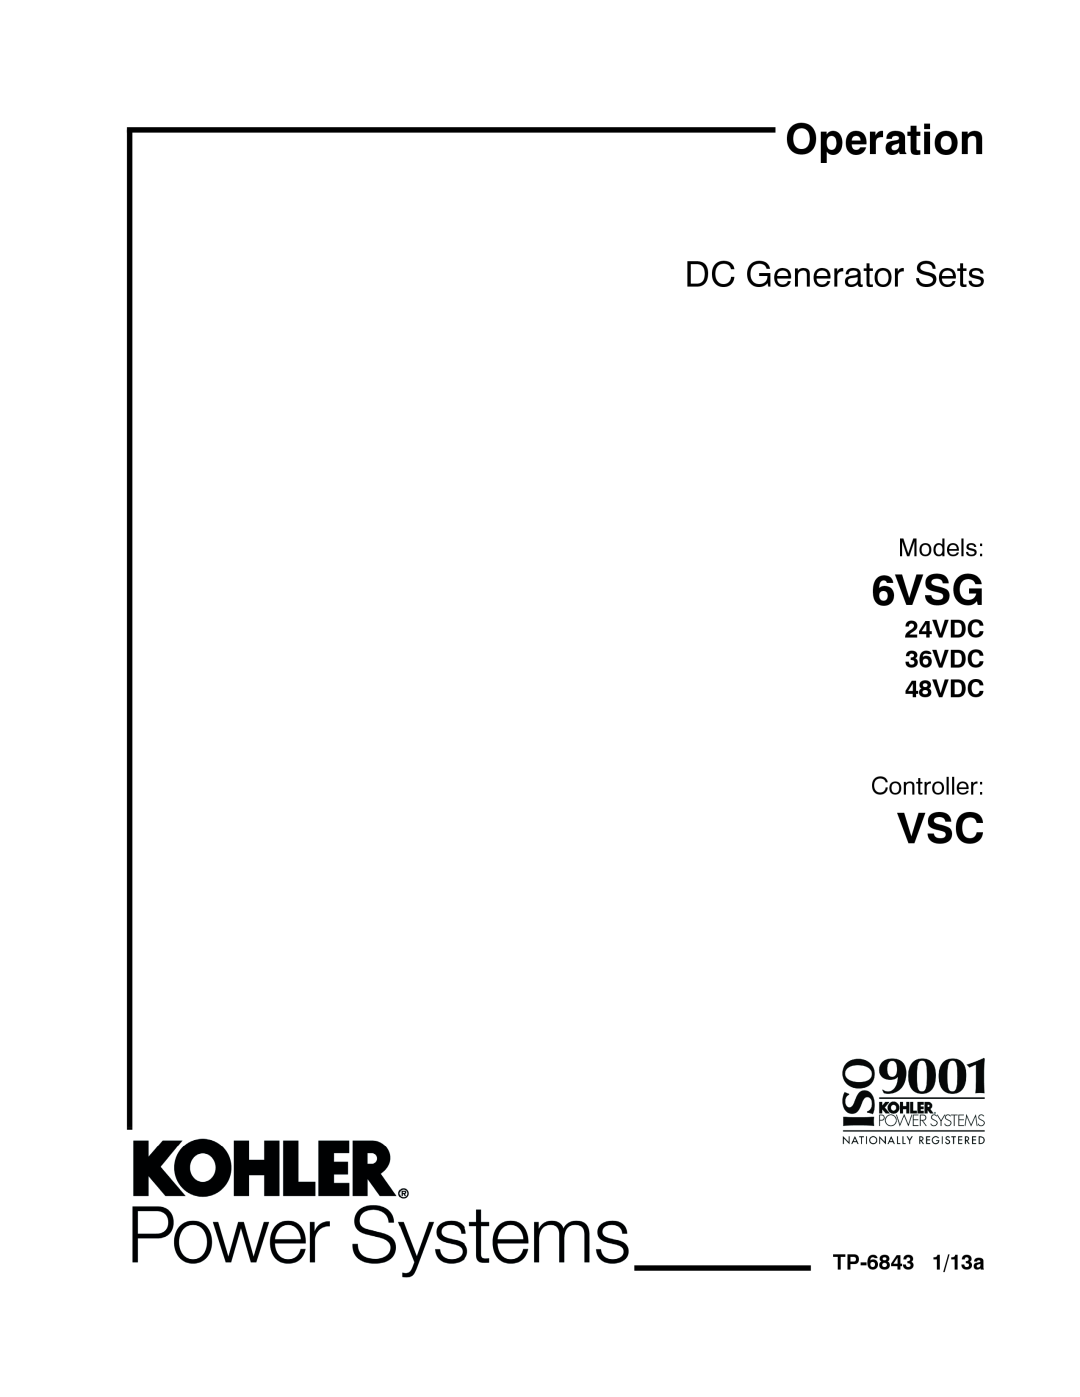 Kohler manual 24VDC 36VDC 48VDC, TP-68431/13a, Operation, 6VSG, DC Generator Sets, Models, Controller 